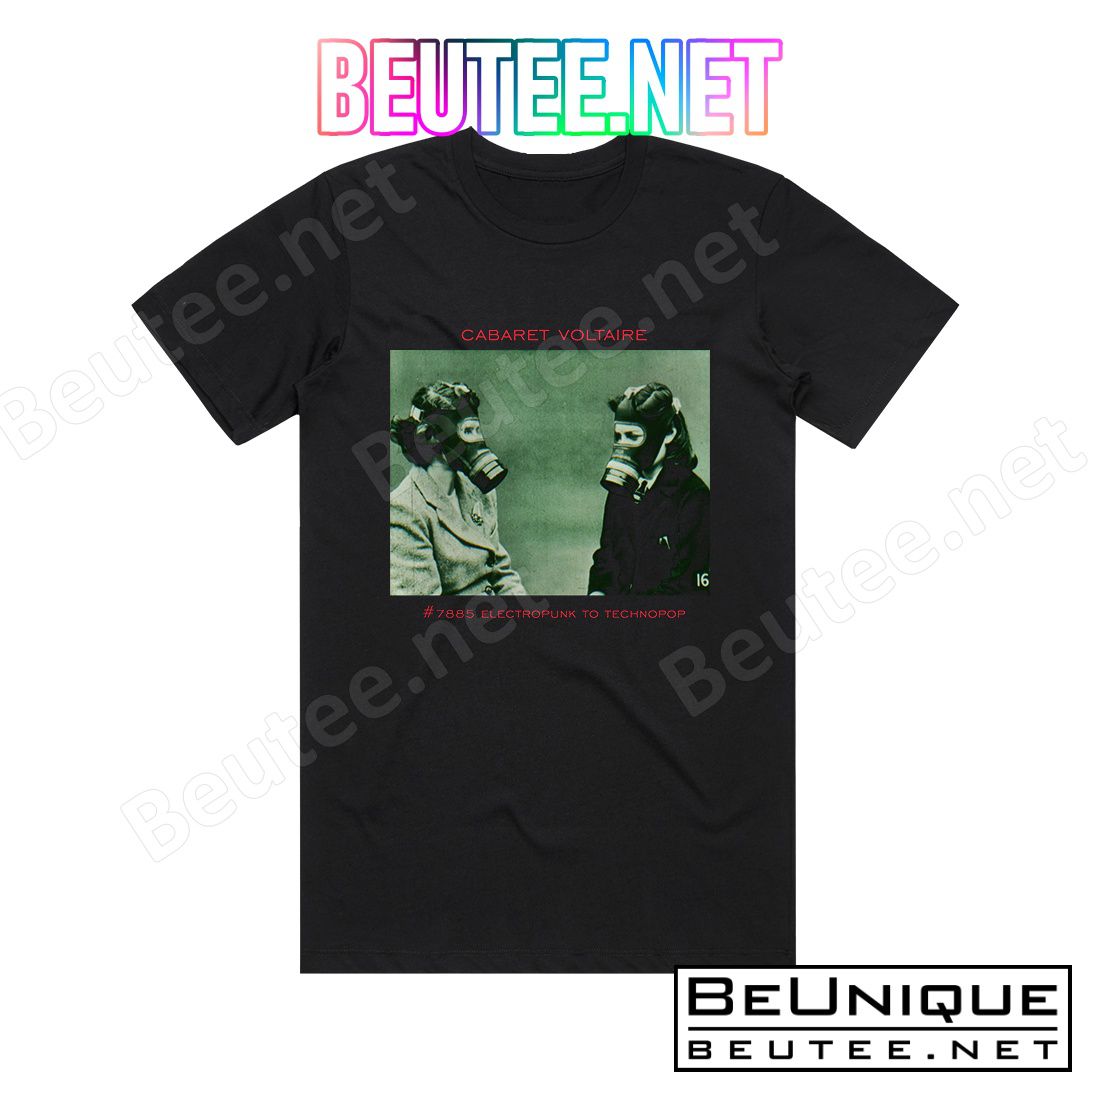 Cabaret Voltaire 7885 Electropunk To Technopop 1978 1985 Album Cover T-Shirt